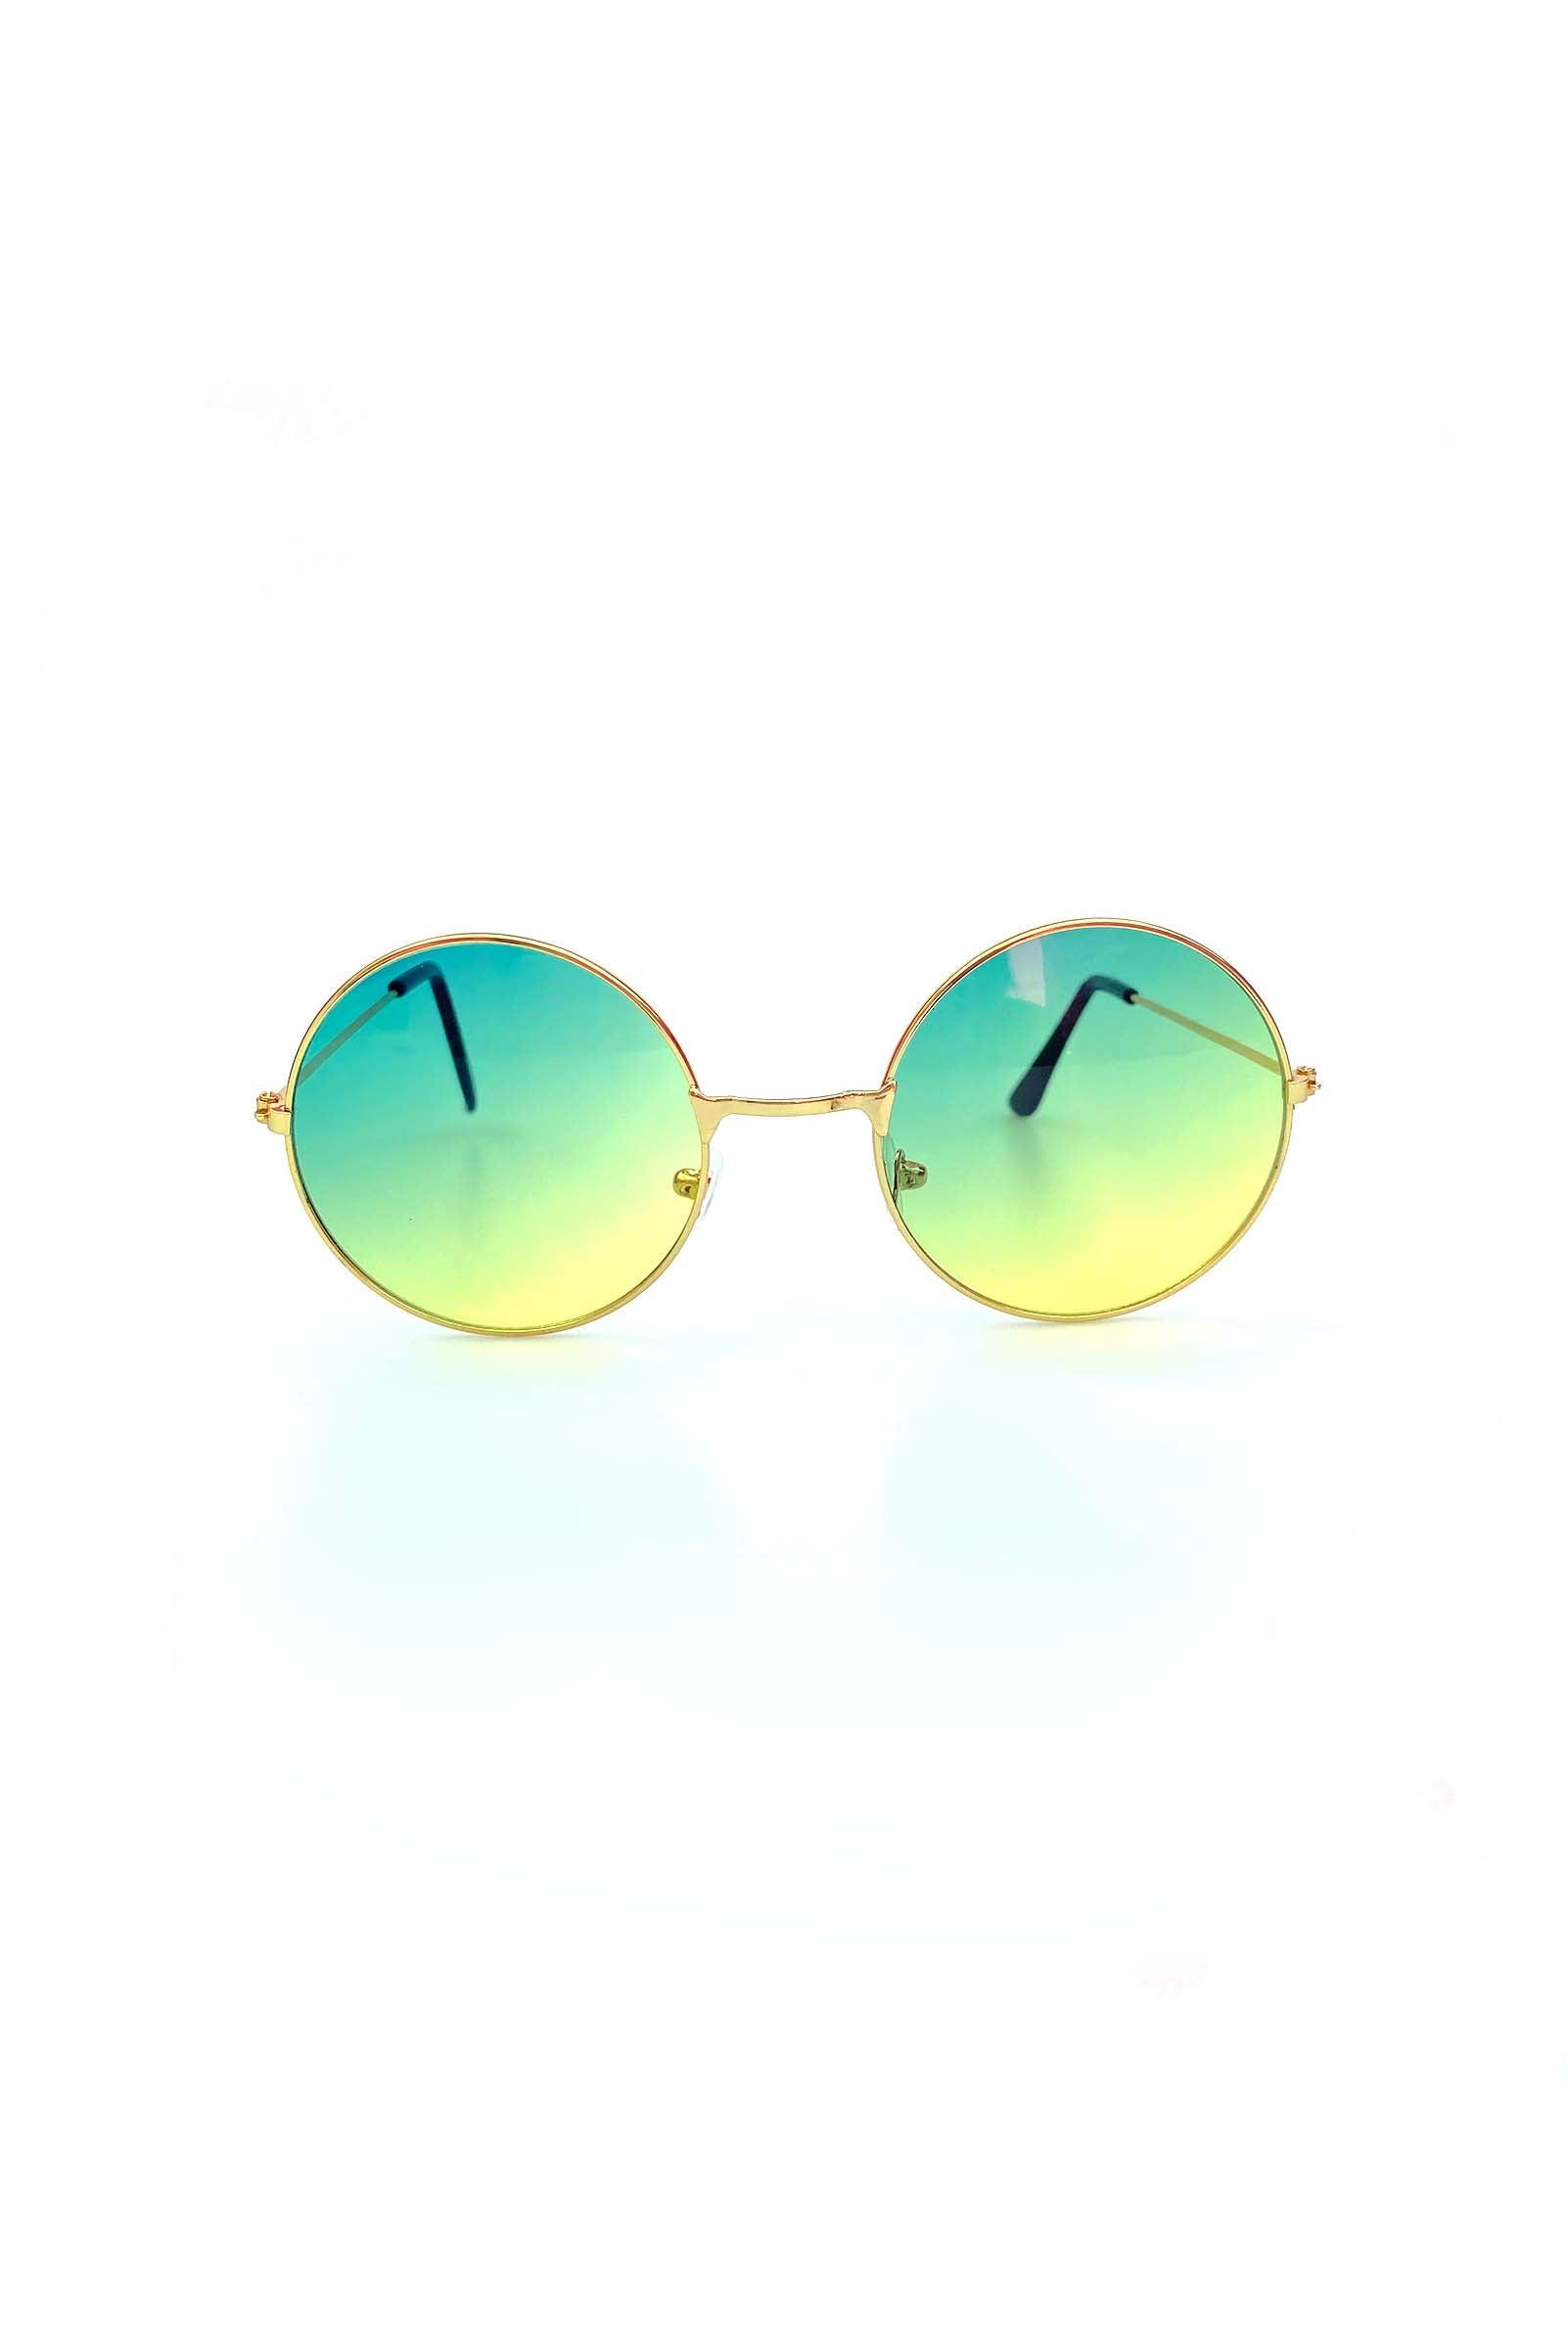 1 John Lennon Sunglasses Round Shades Gold Black India | Ubuy